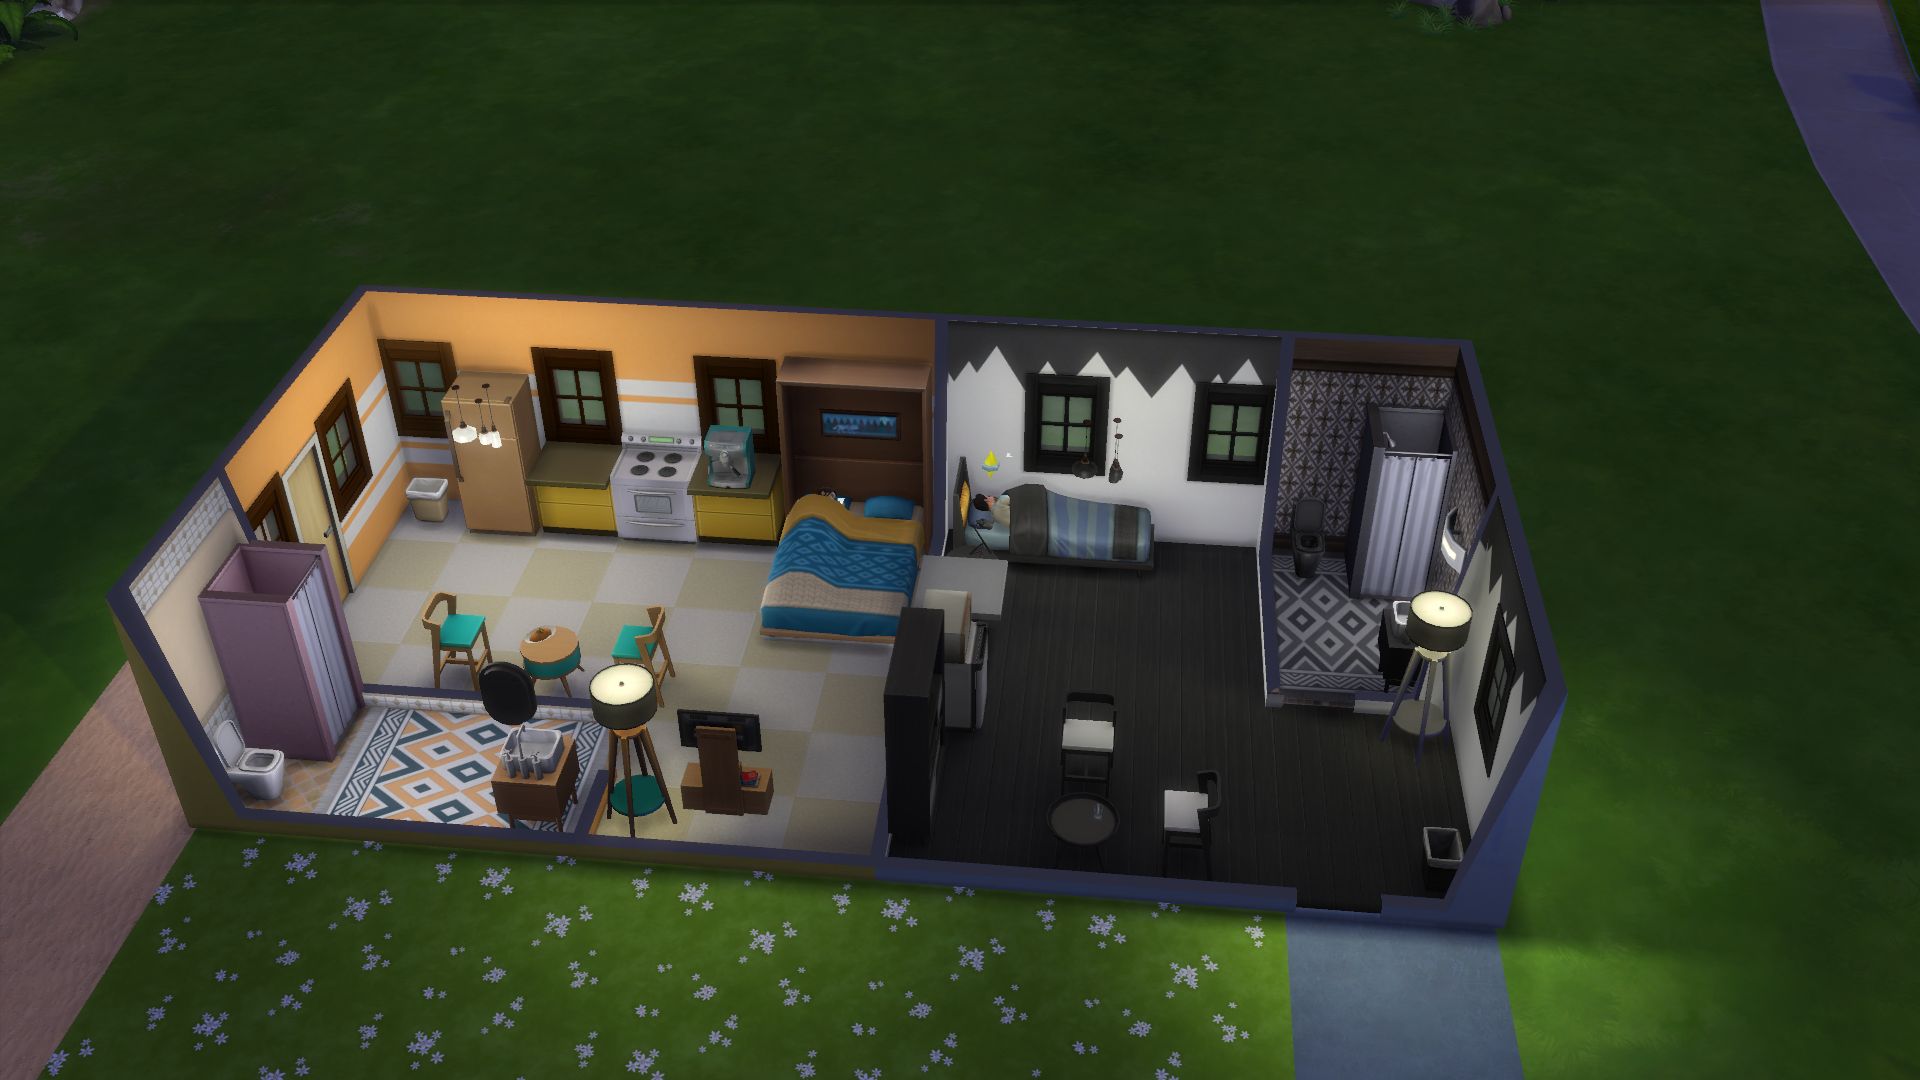 Mieszkanie W Bloku The Sims 4 The Sims 4: Kompaktowe wnętrza - recenzja dodatku